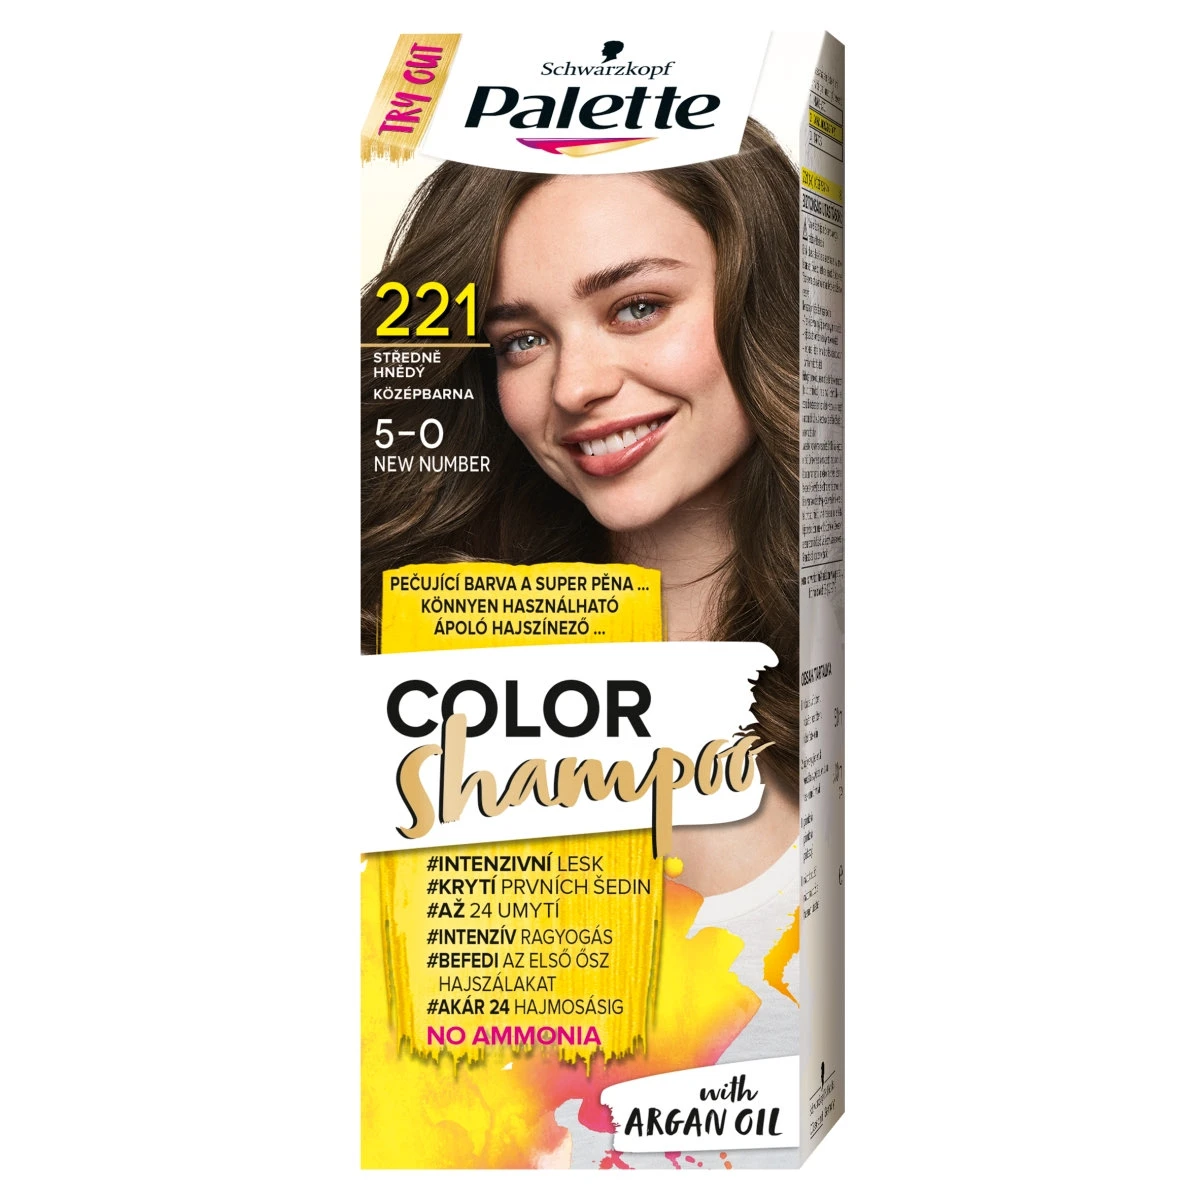 Schwarzkopf Palette Color Shampoo hajszínező 5 0 középbarna (221)